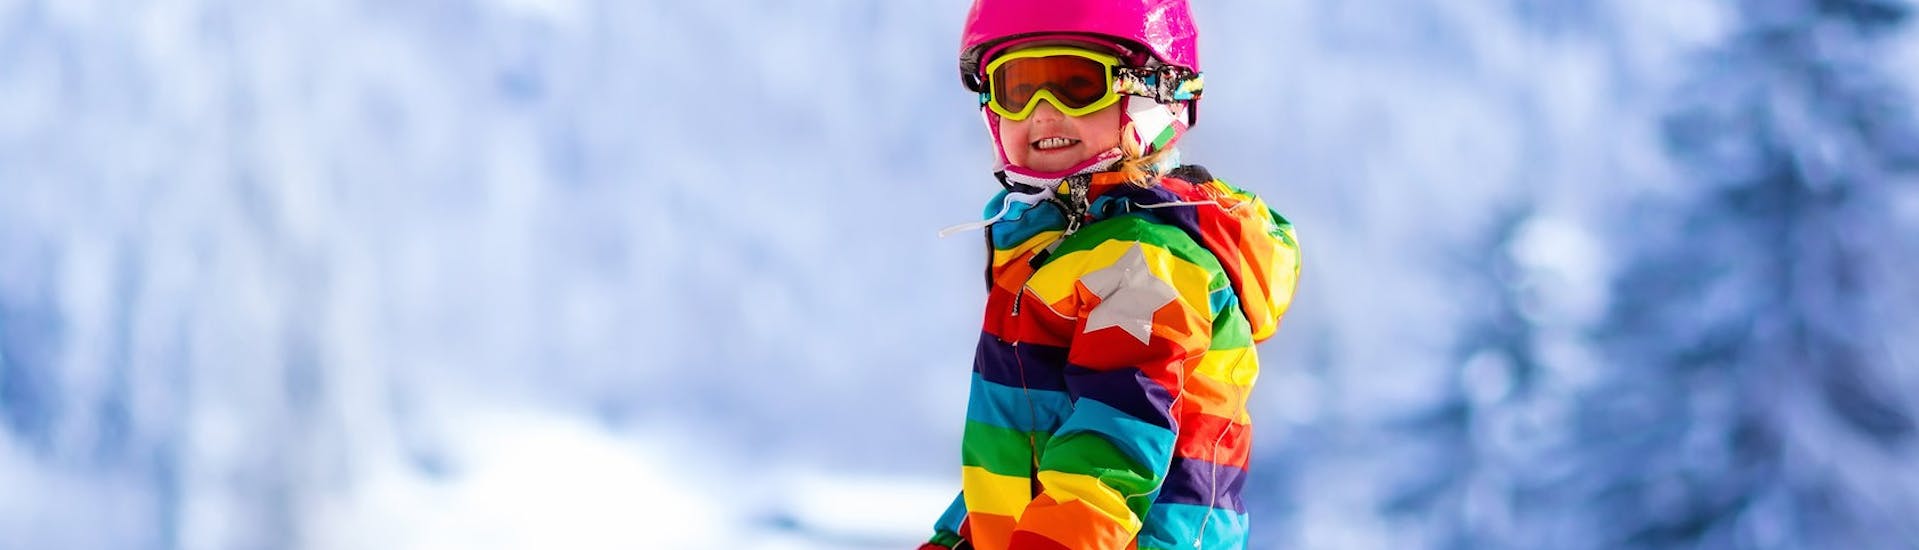 Un bambino fa una discesa durante le Lezioni di sci per bambini (6-15 anni) per principianti.